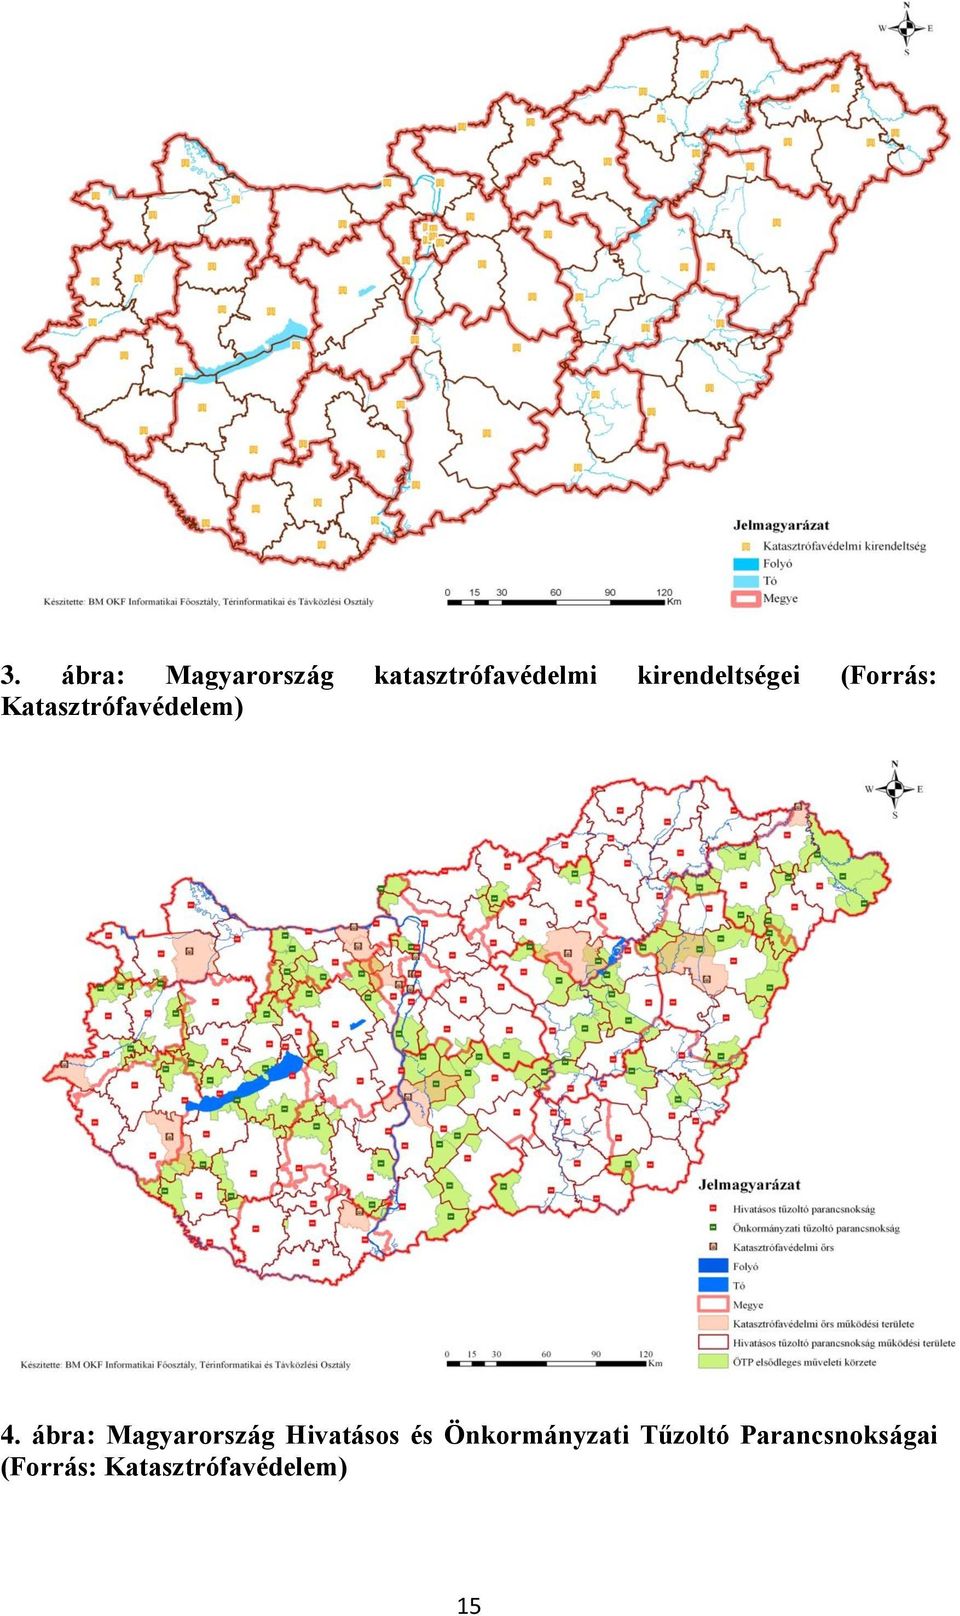 ábra: Magyarország Hivatásos és Önkormányzati